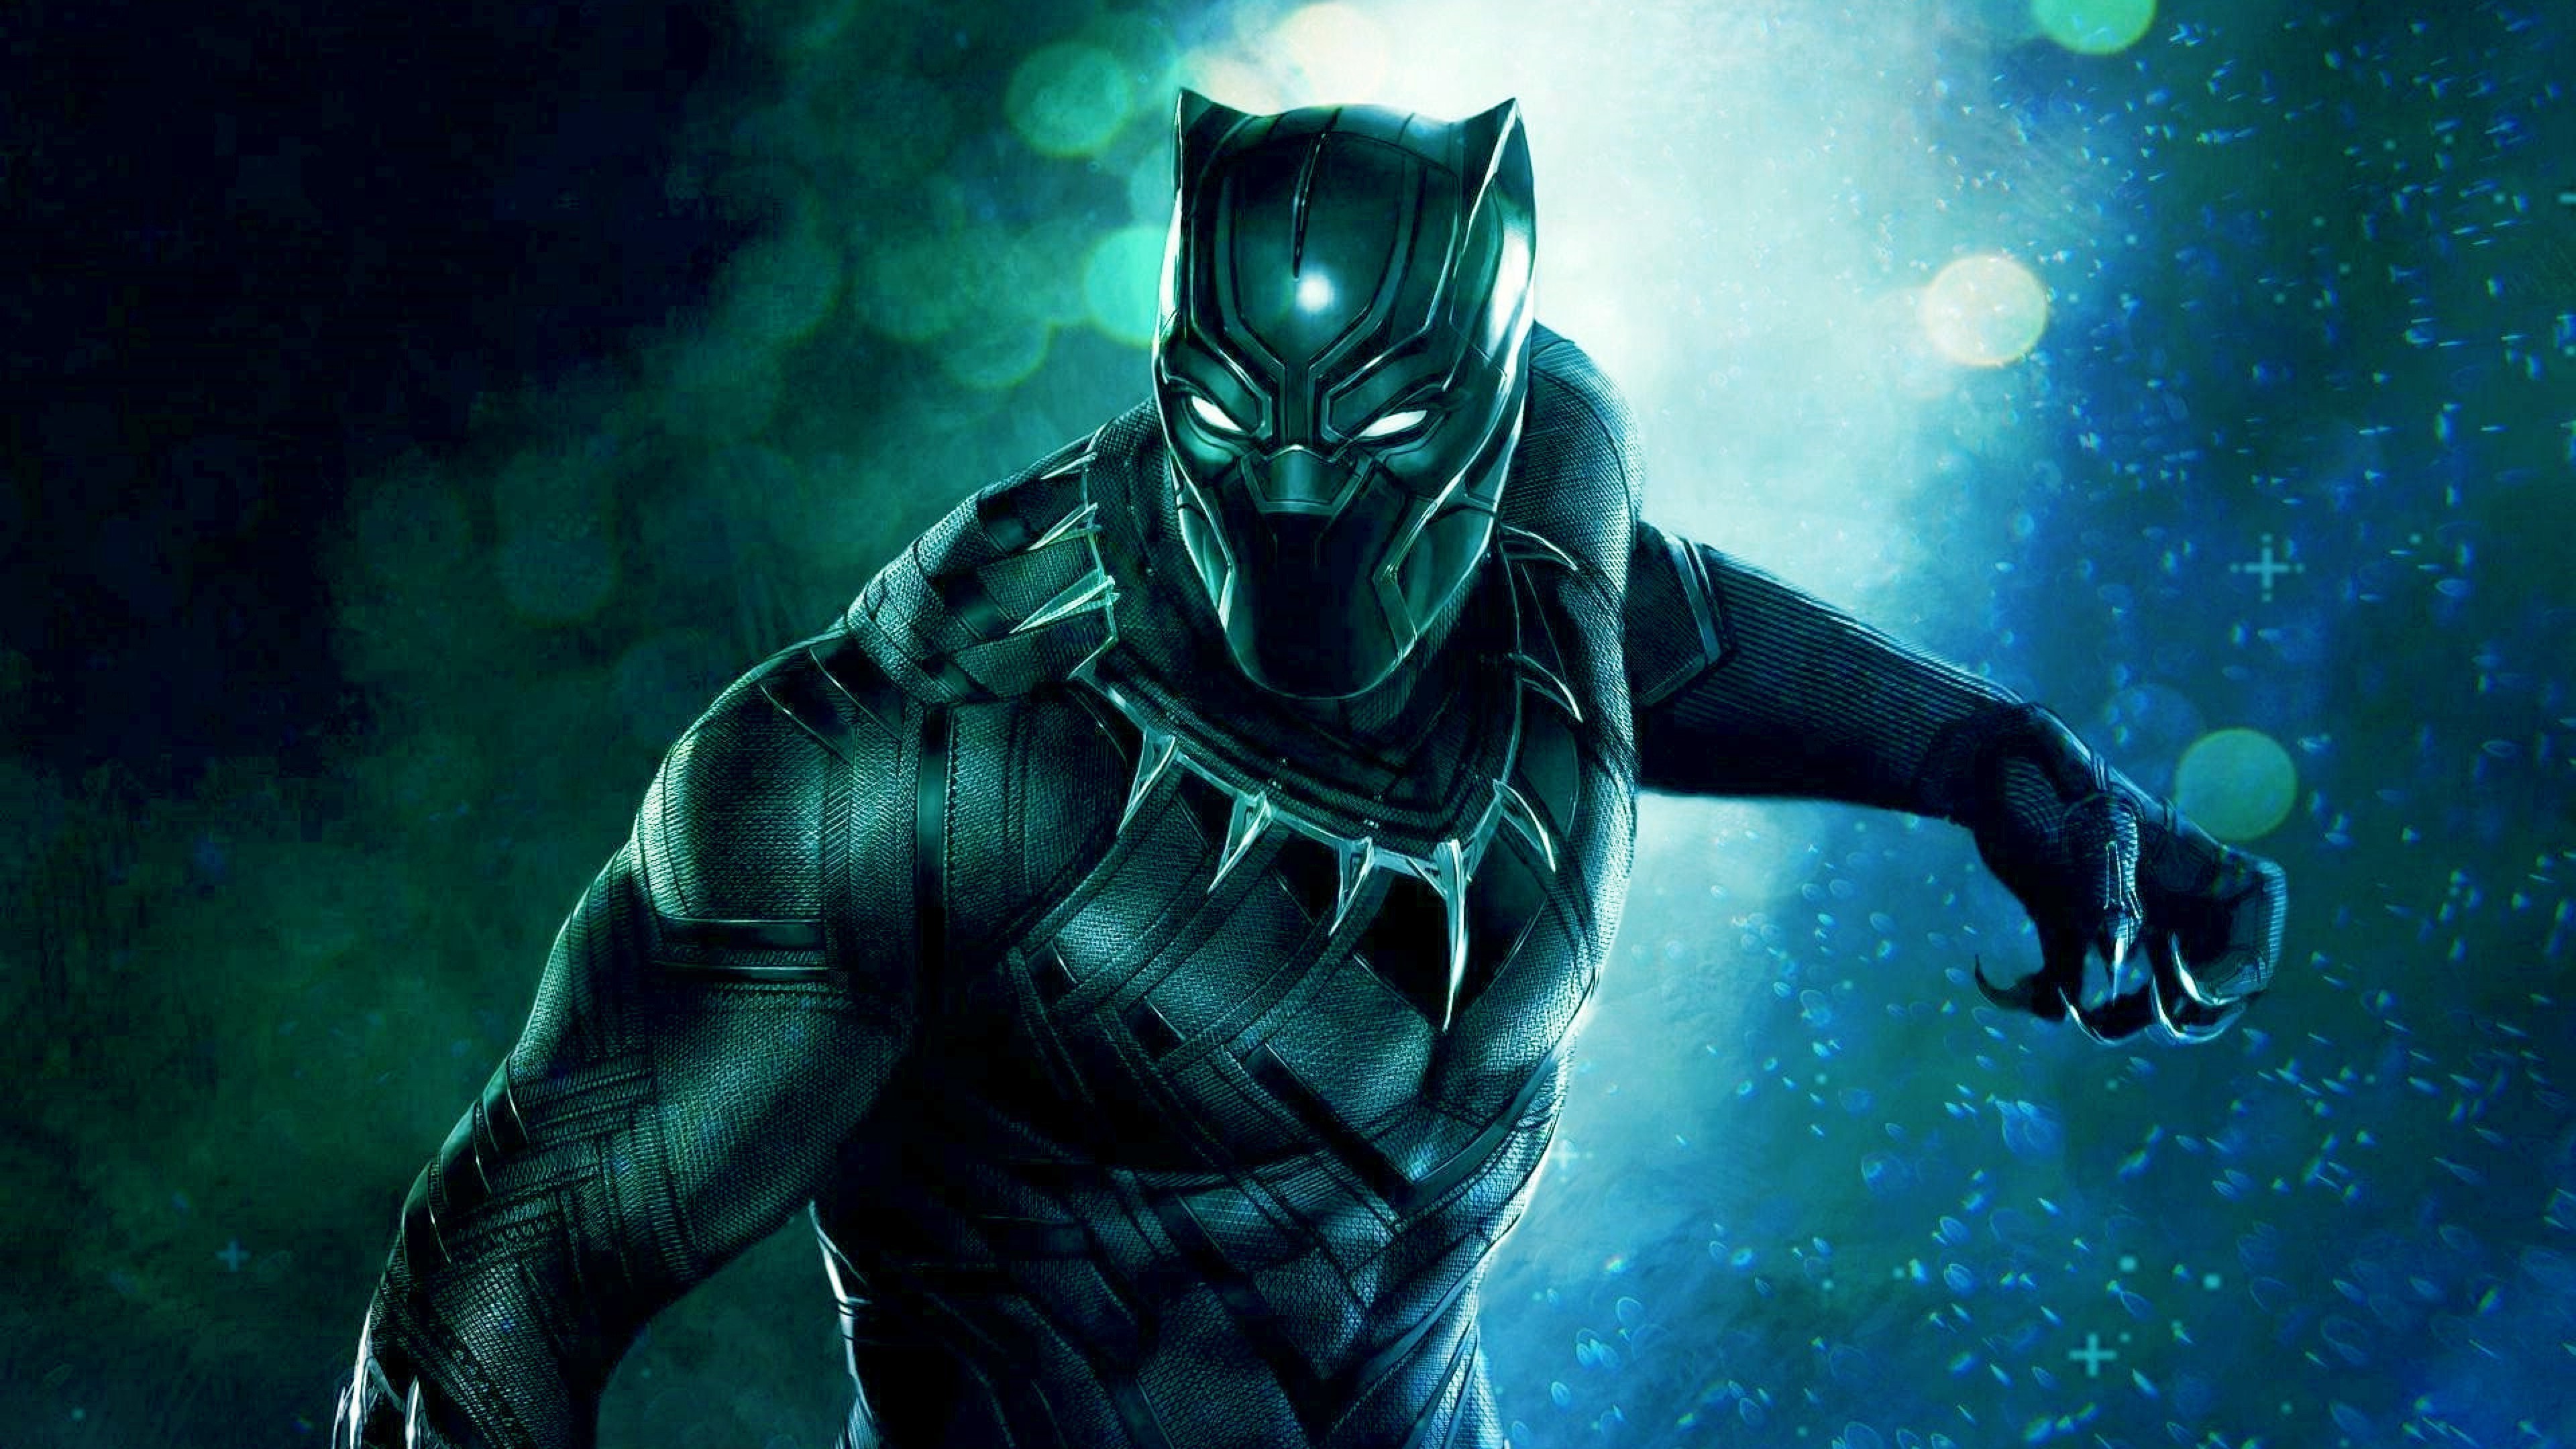 3840x2160 4K Image of Black Panther Superhero